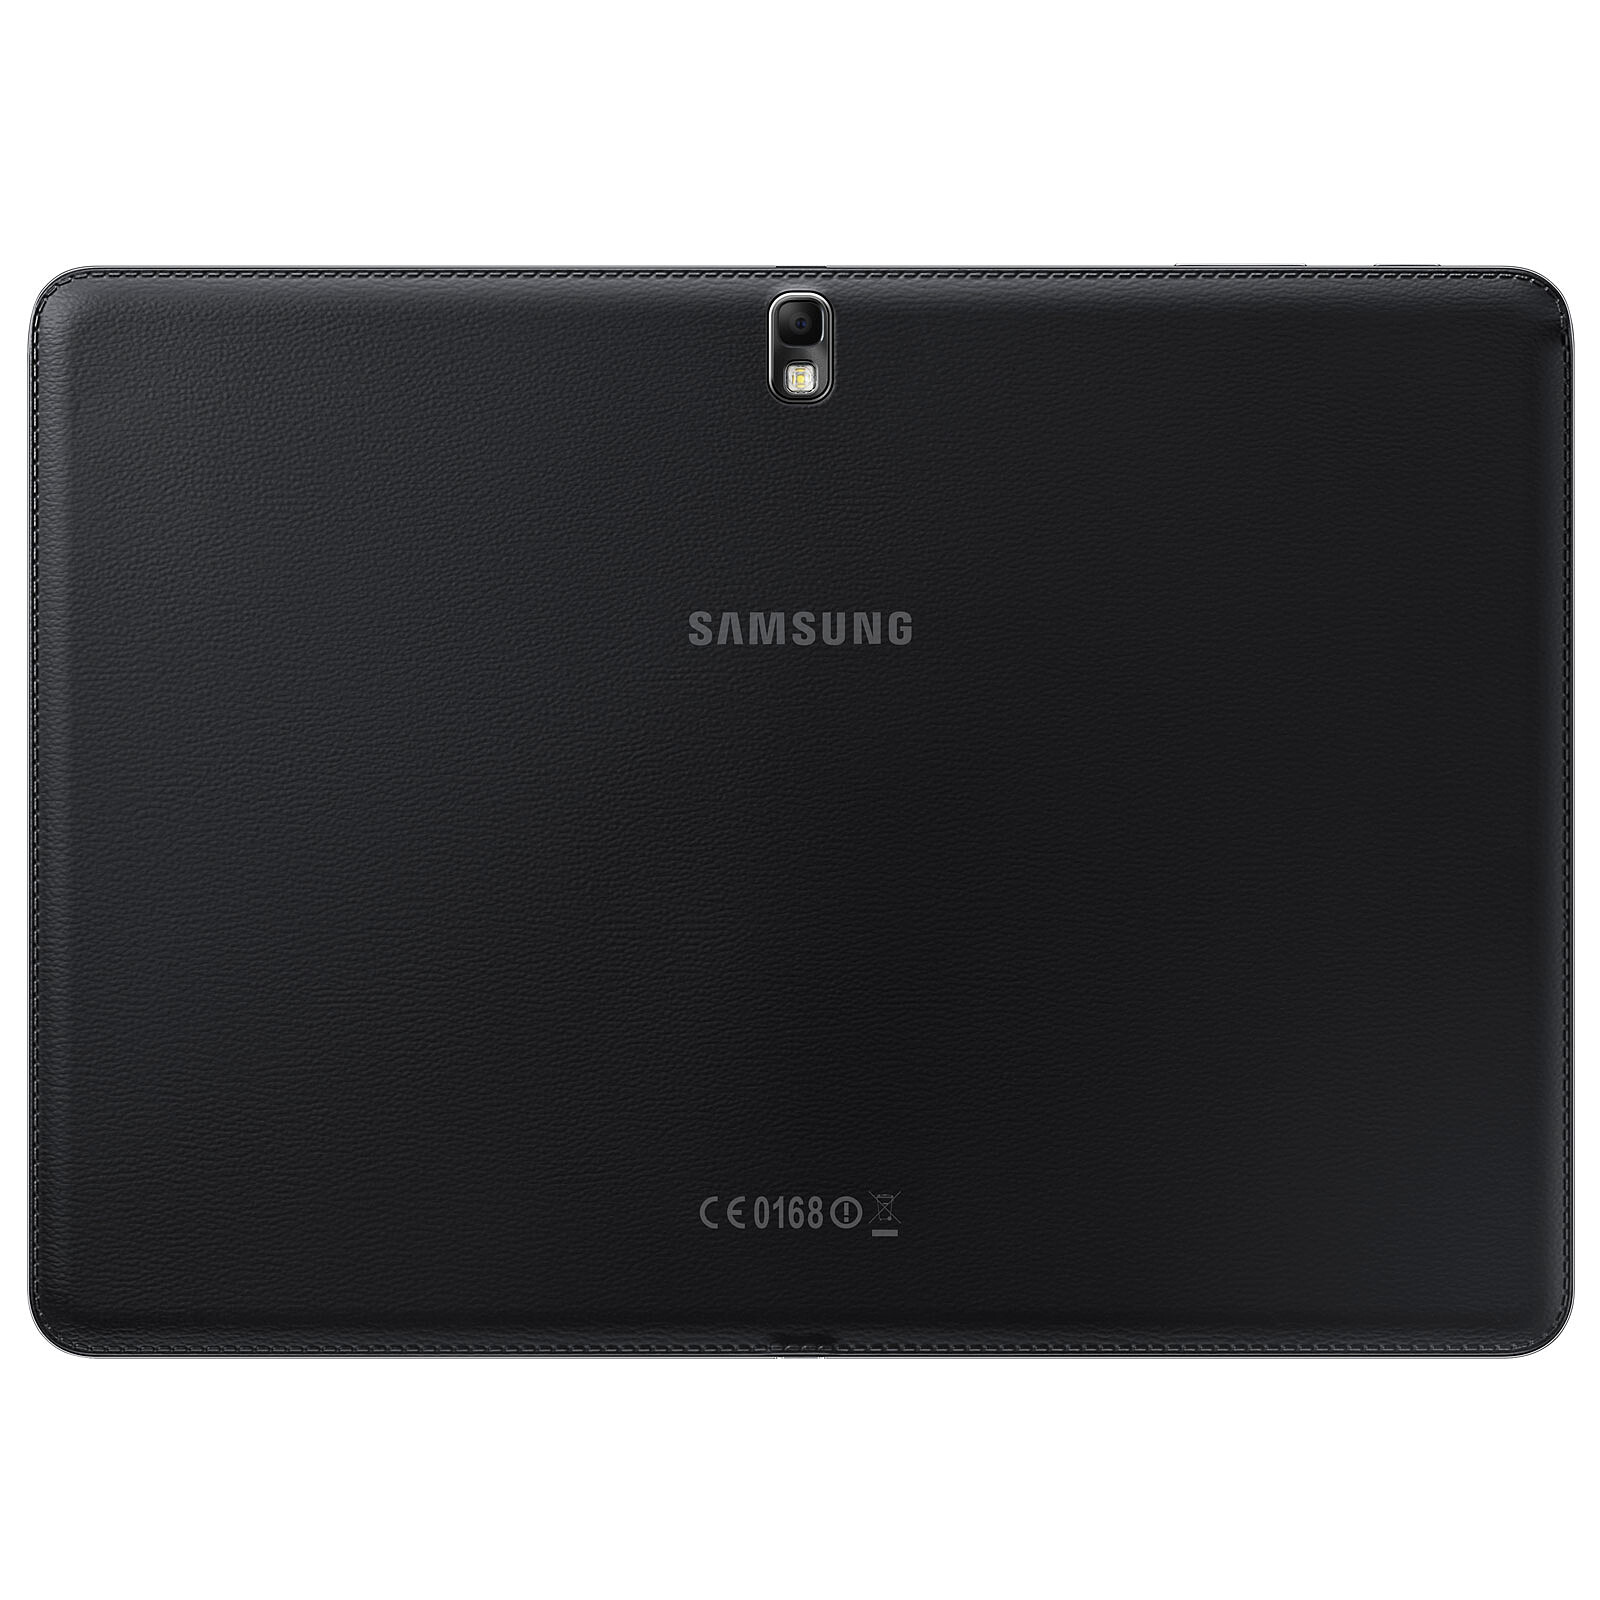 Купить планшет 10.4. Samsung Galaxy Tab 4 10.1. Samsung Galaxy Tab Note 10.1. Samsung Galaxy Tab Pro 10.1 LTE. Samsung Galaxy Tab 4 10.1 SM-t531 16gb.